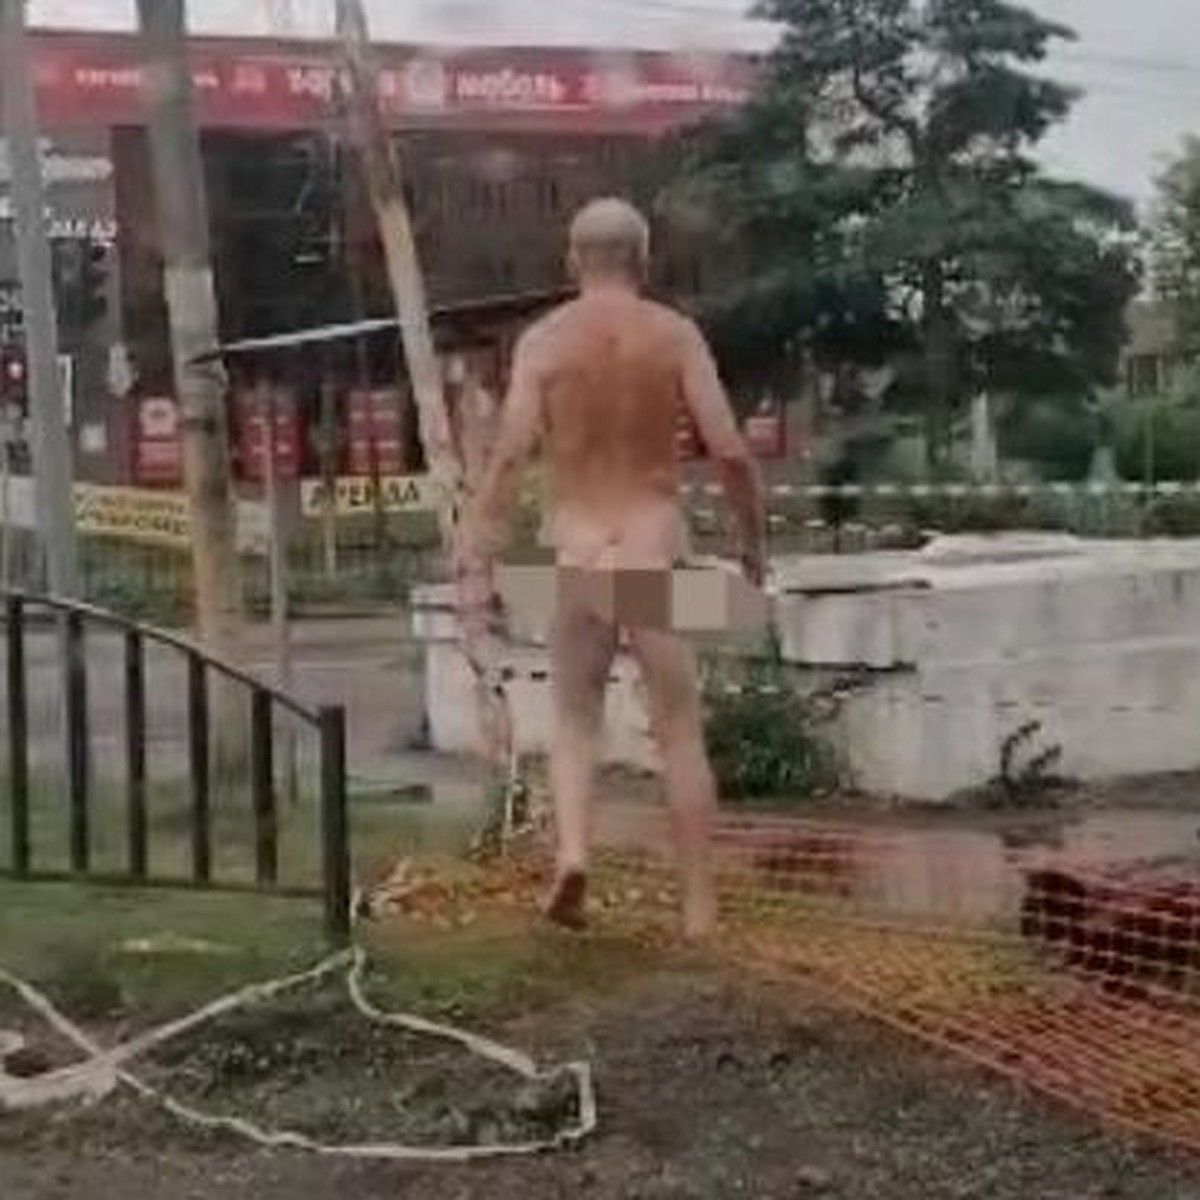 Пермяков рассмешил голый мужчина в центре города. «Кредит выплачен»